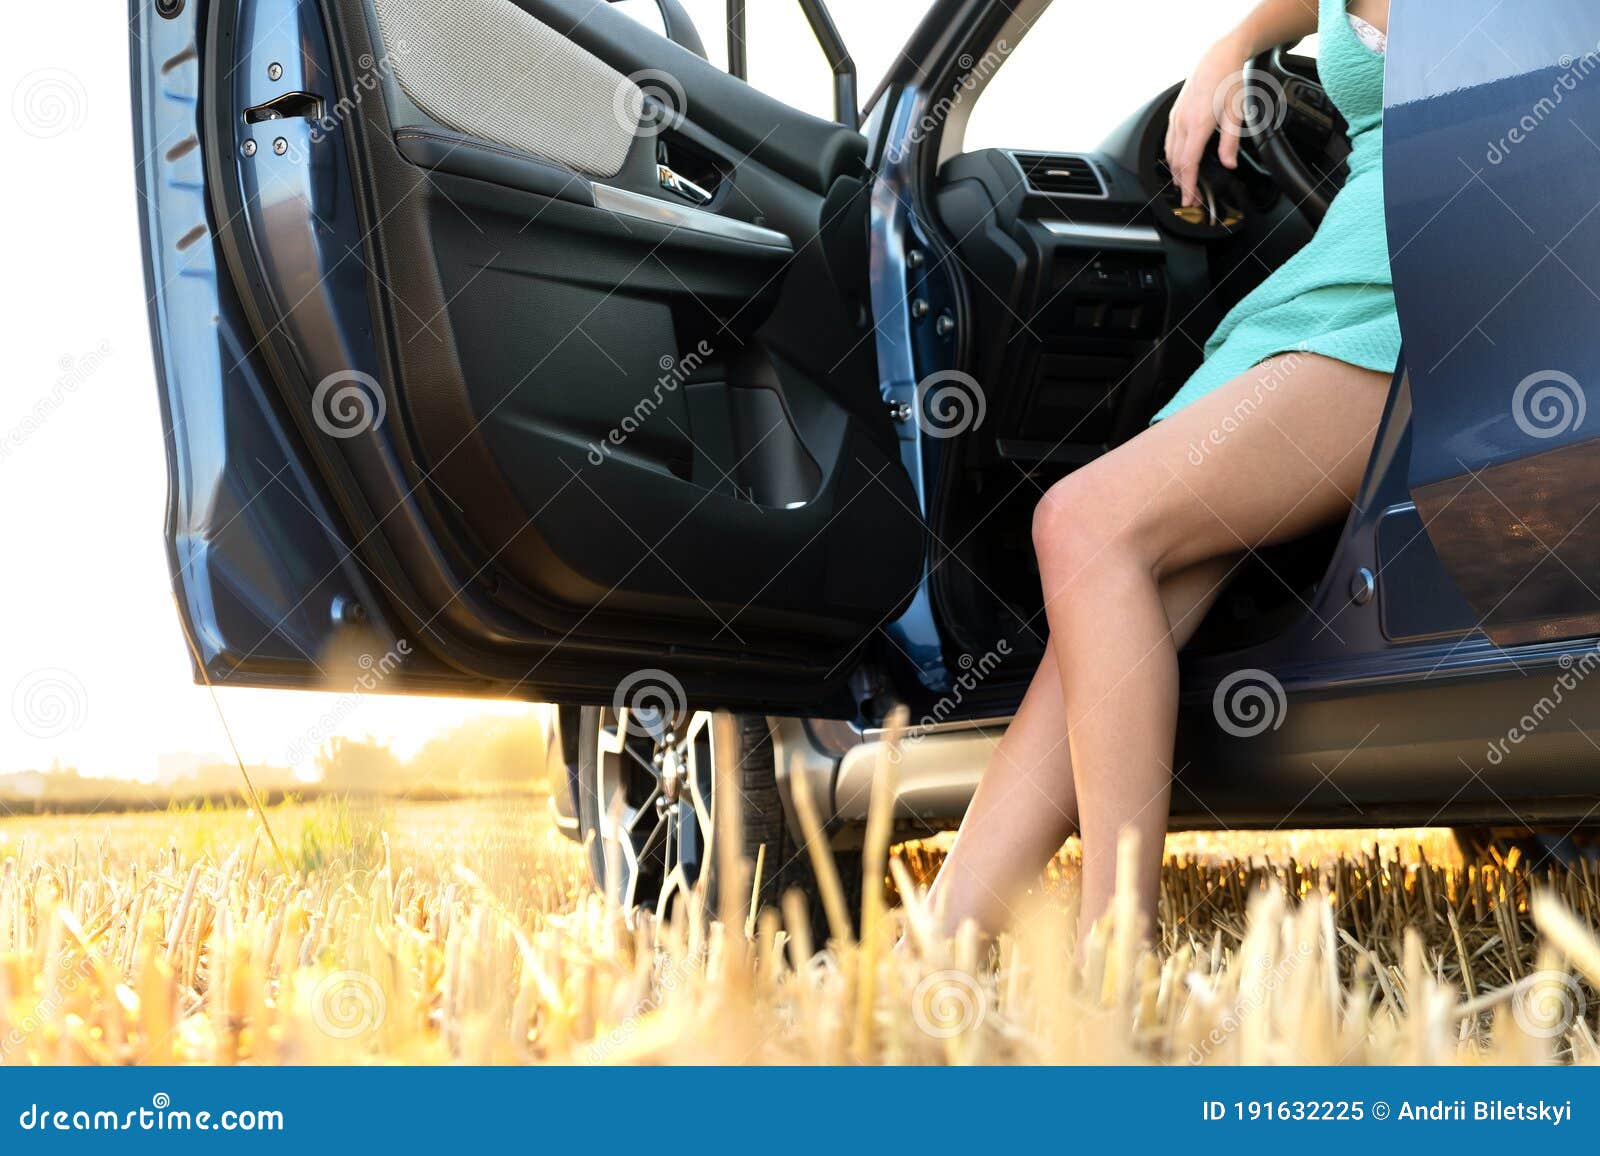 голые красивые девушки около машин